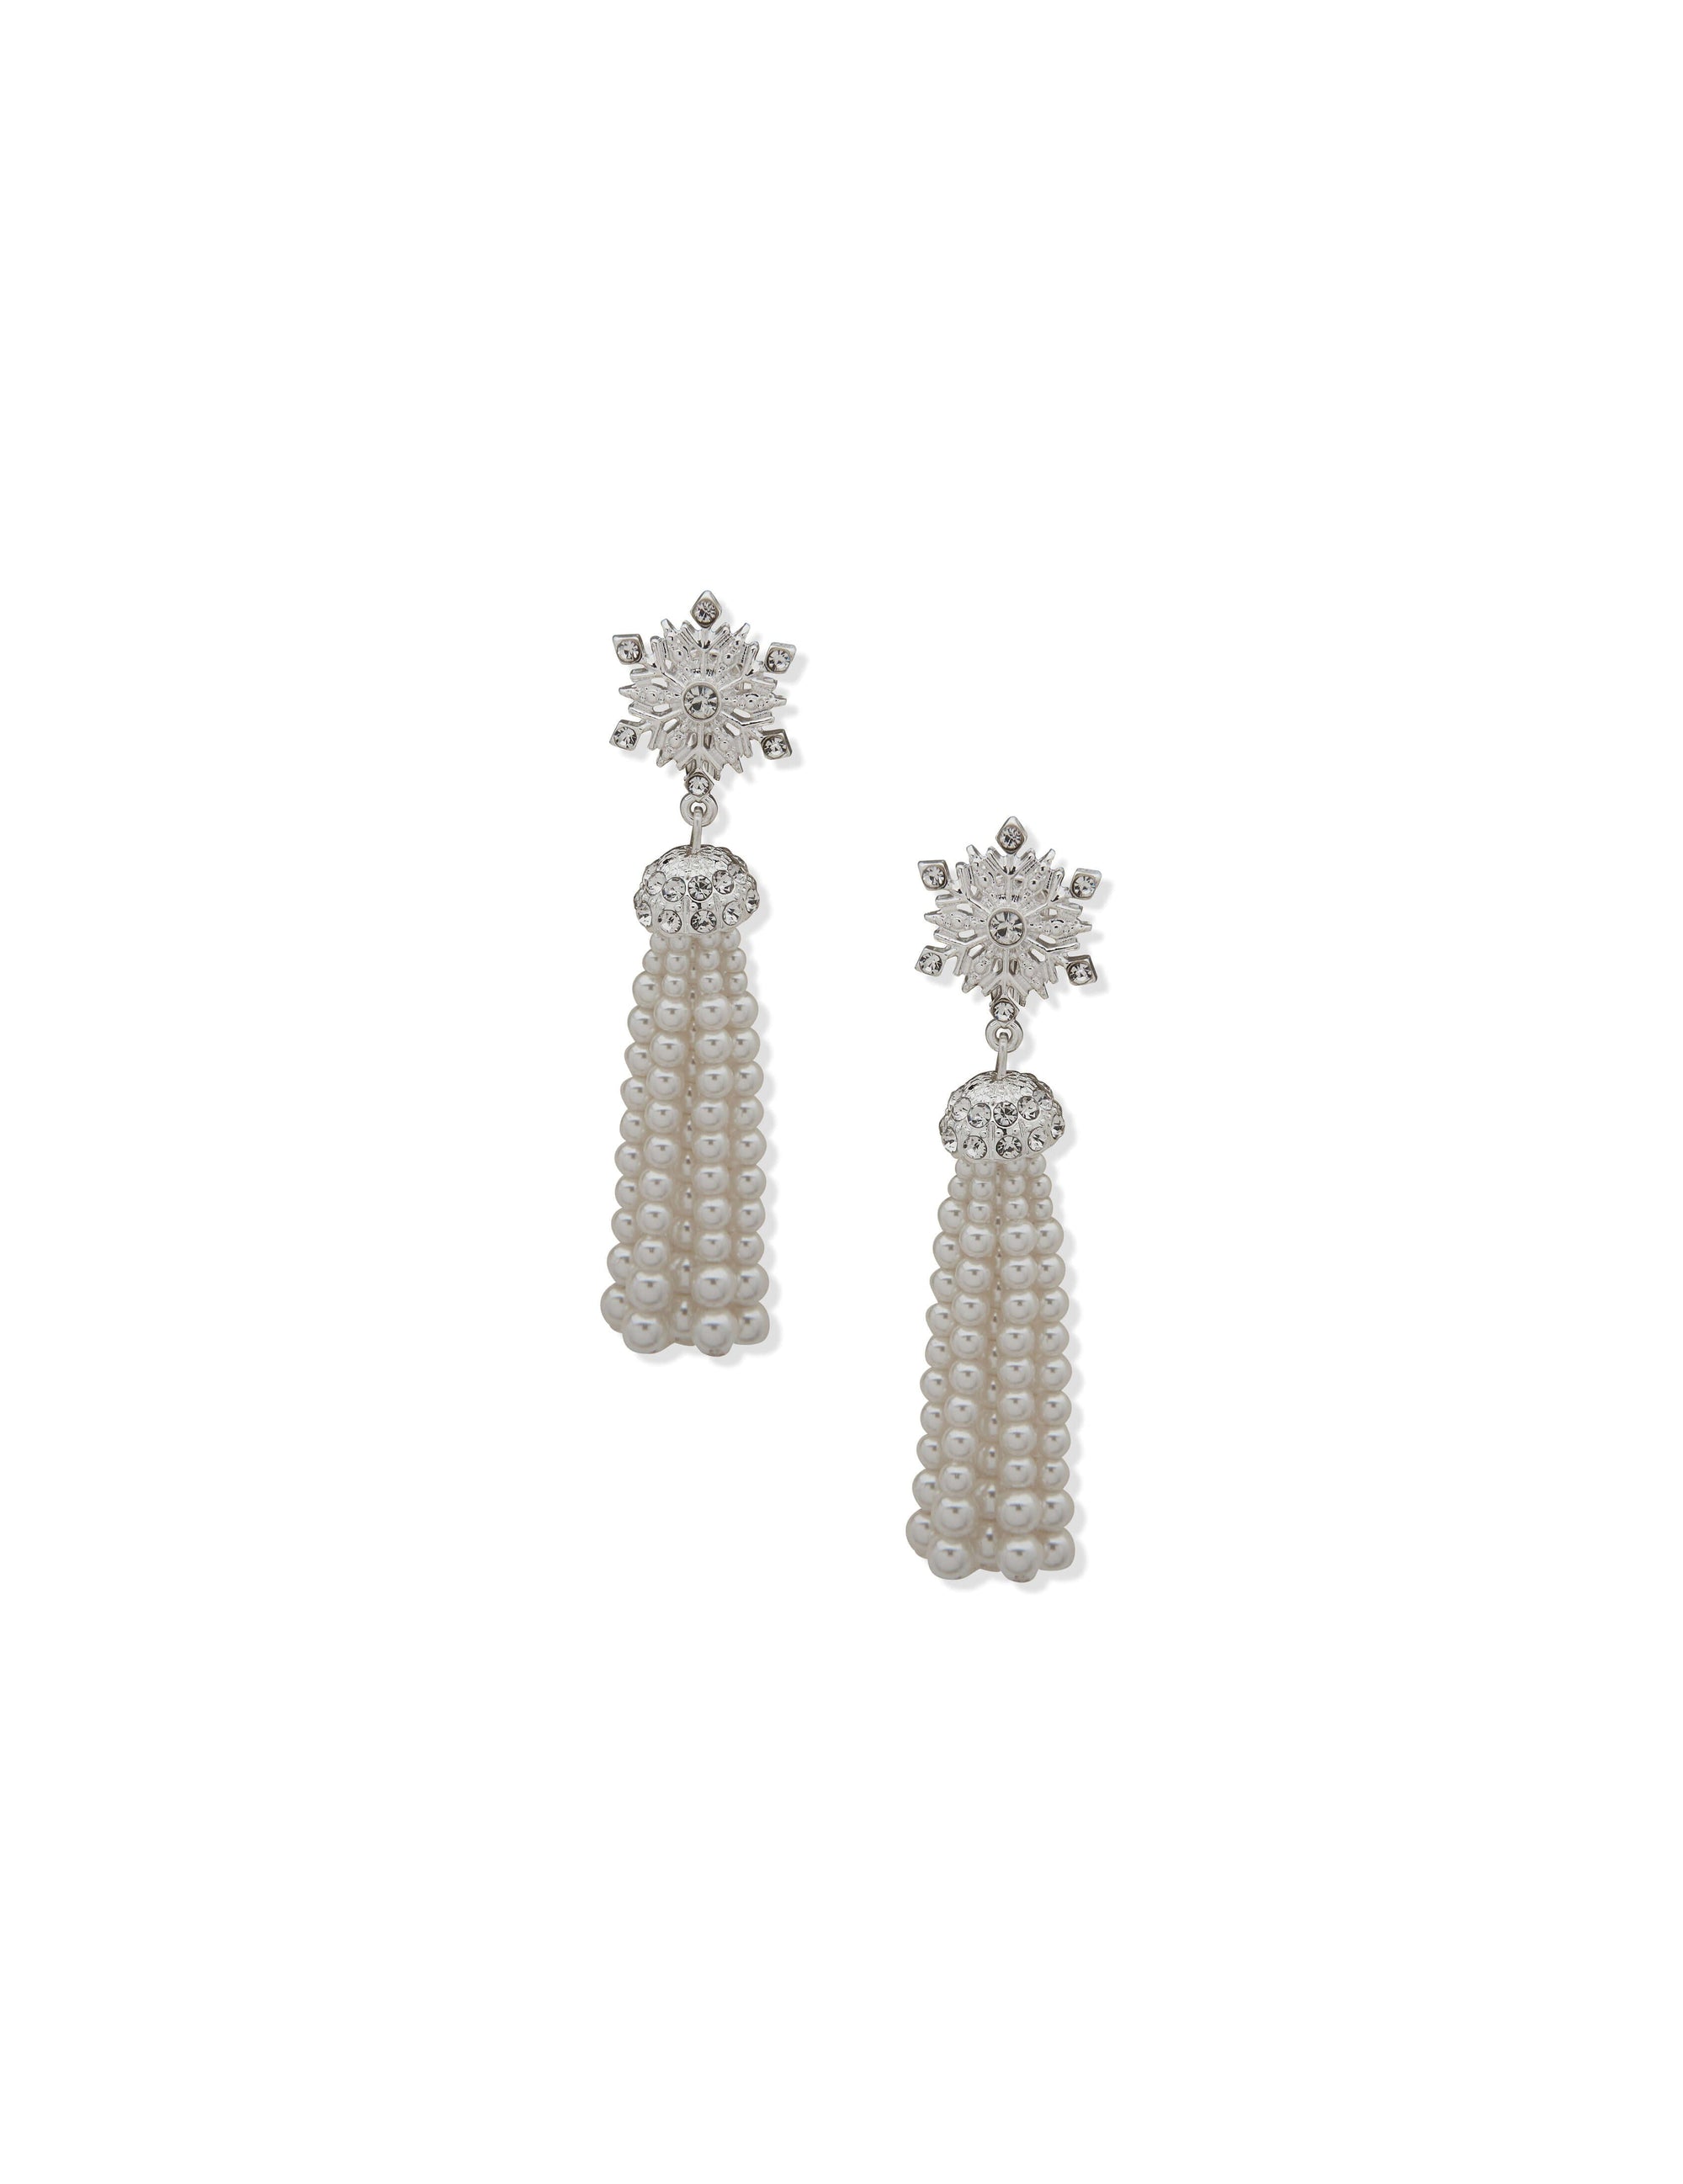 Anne Klein Silver Tone Snowflake Linear Pierced Earring with Faux Pearl Tassel